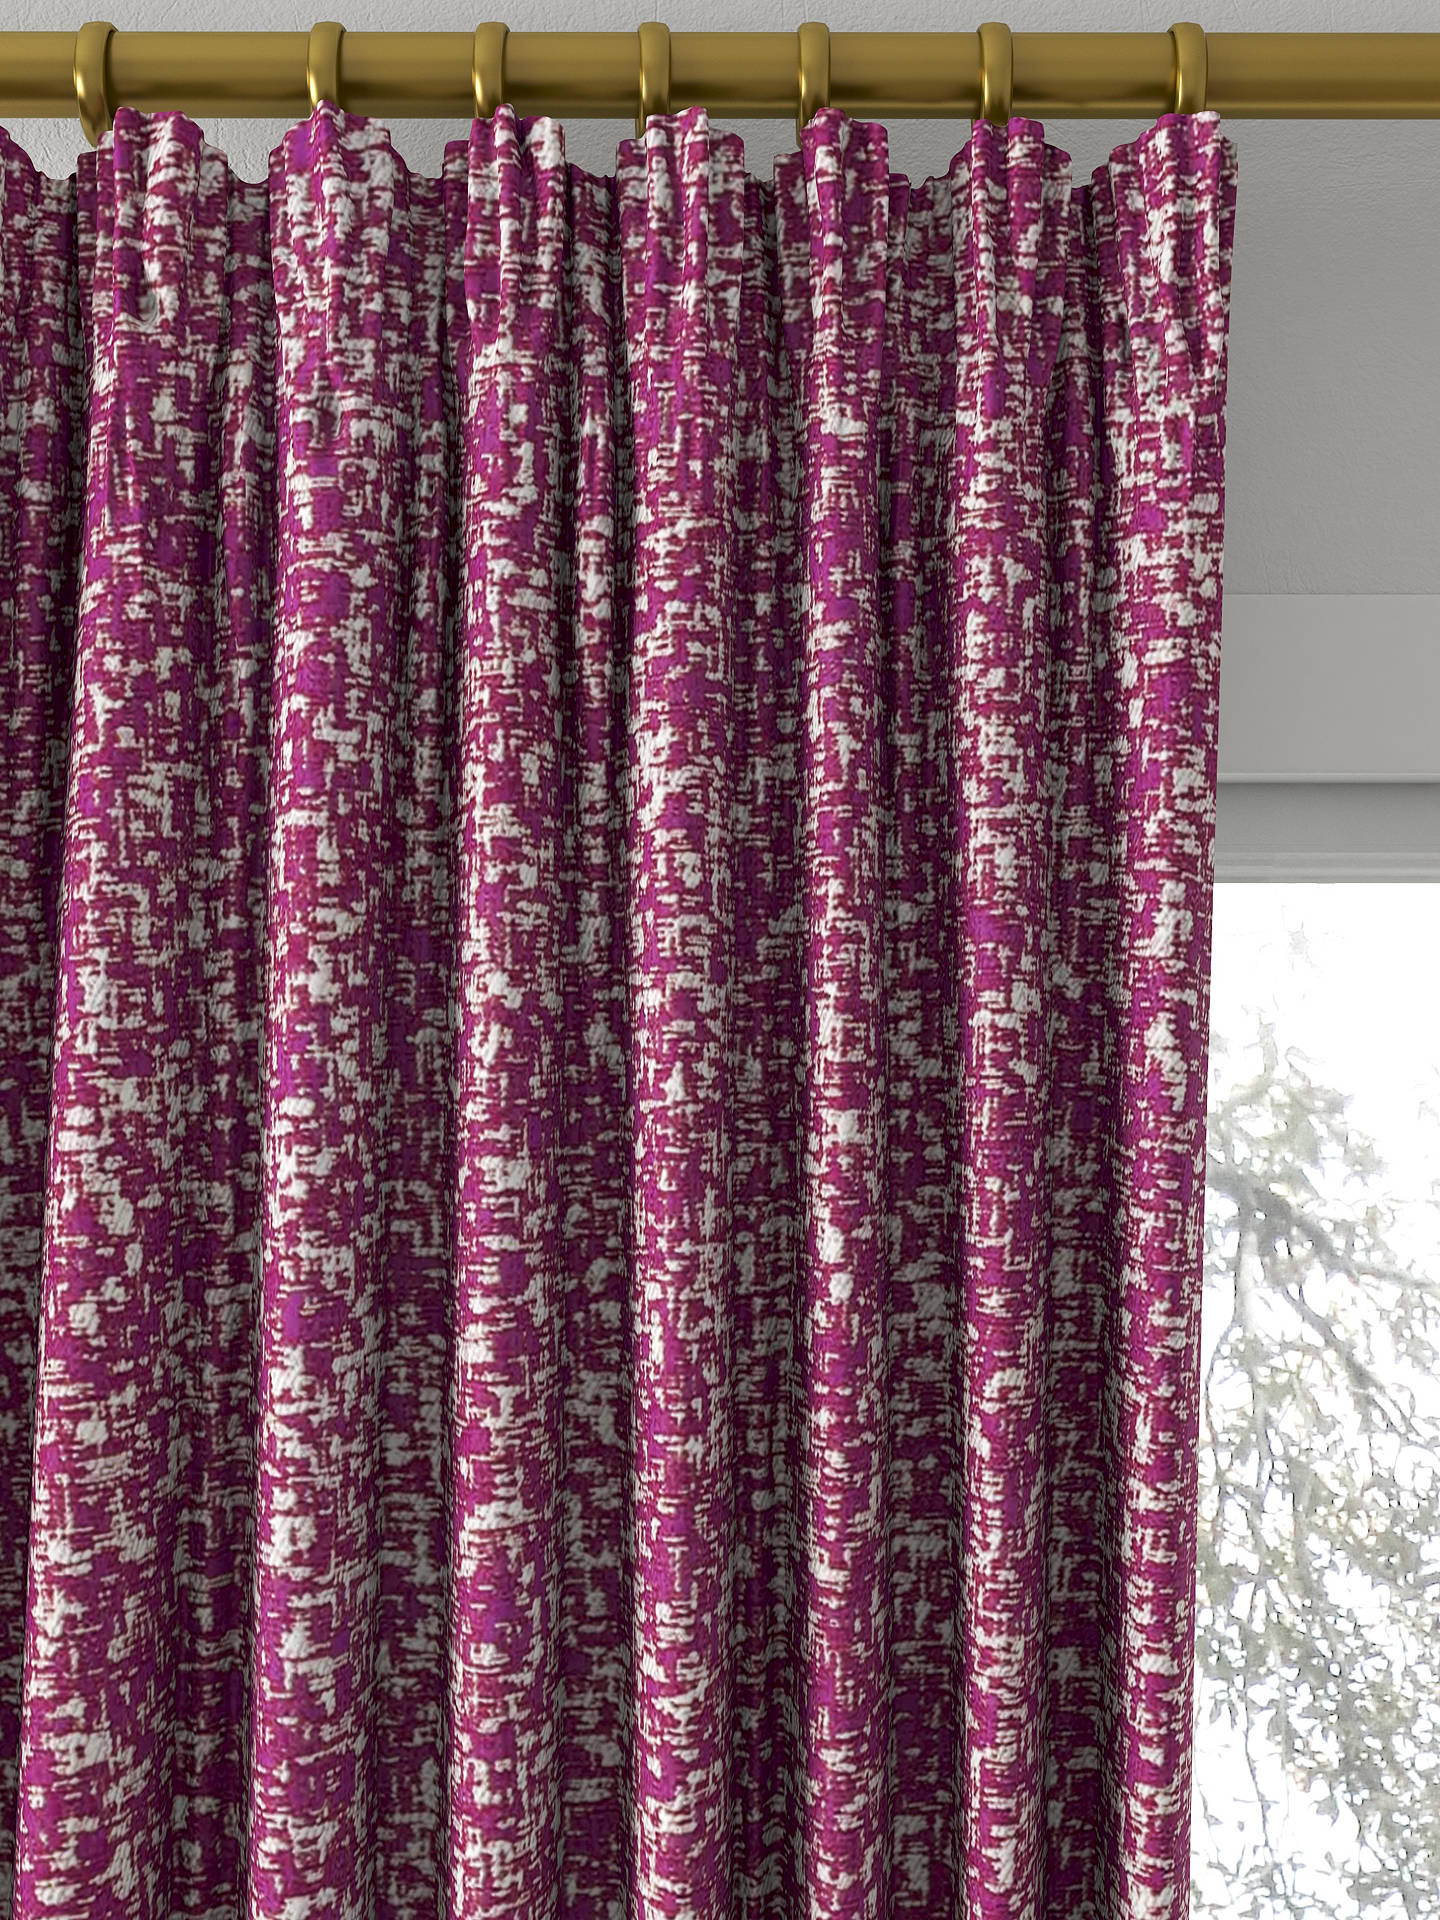 Harlequin Teesha Made to Measure Curtains, Fuchsia